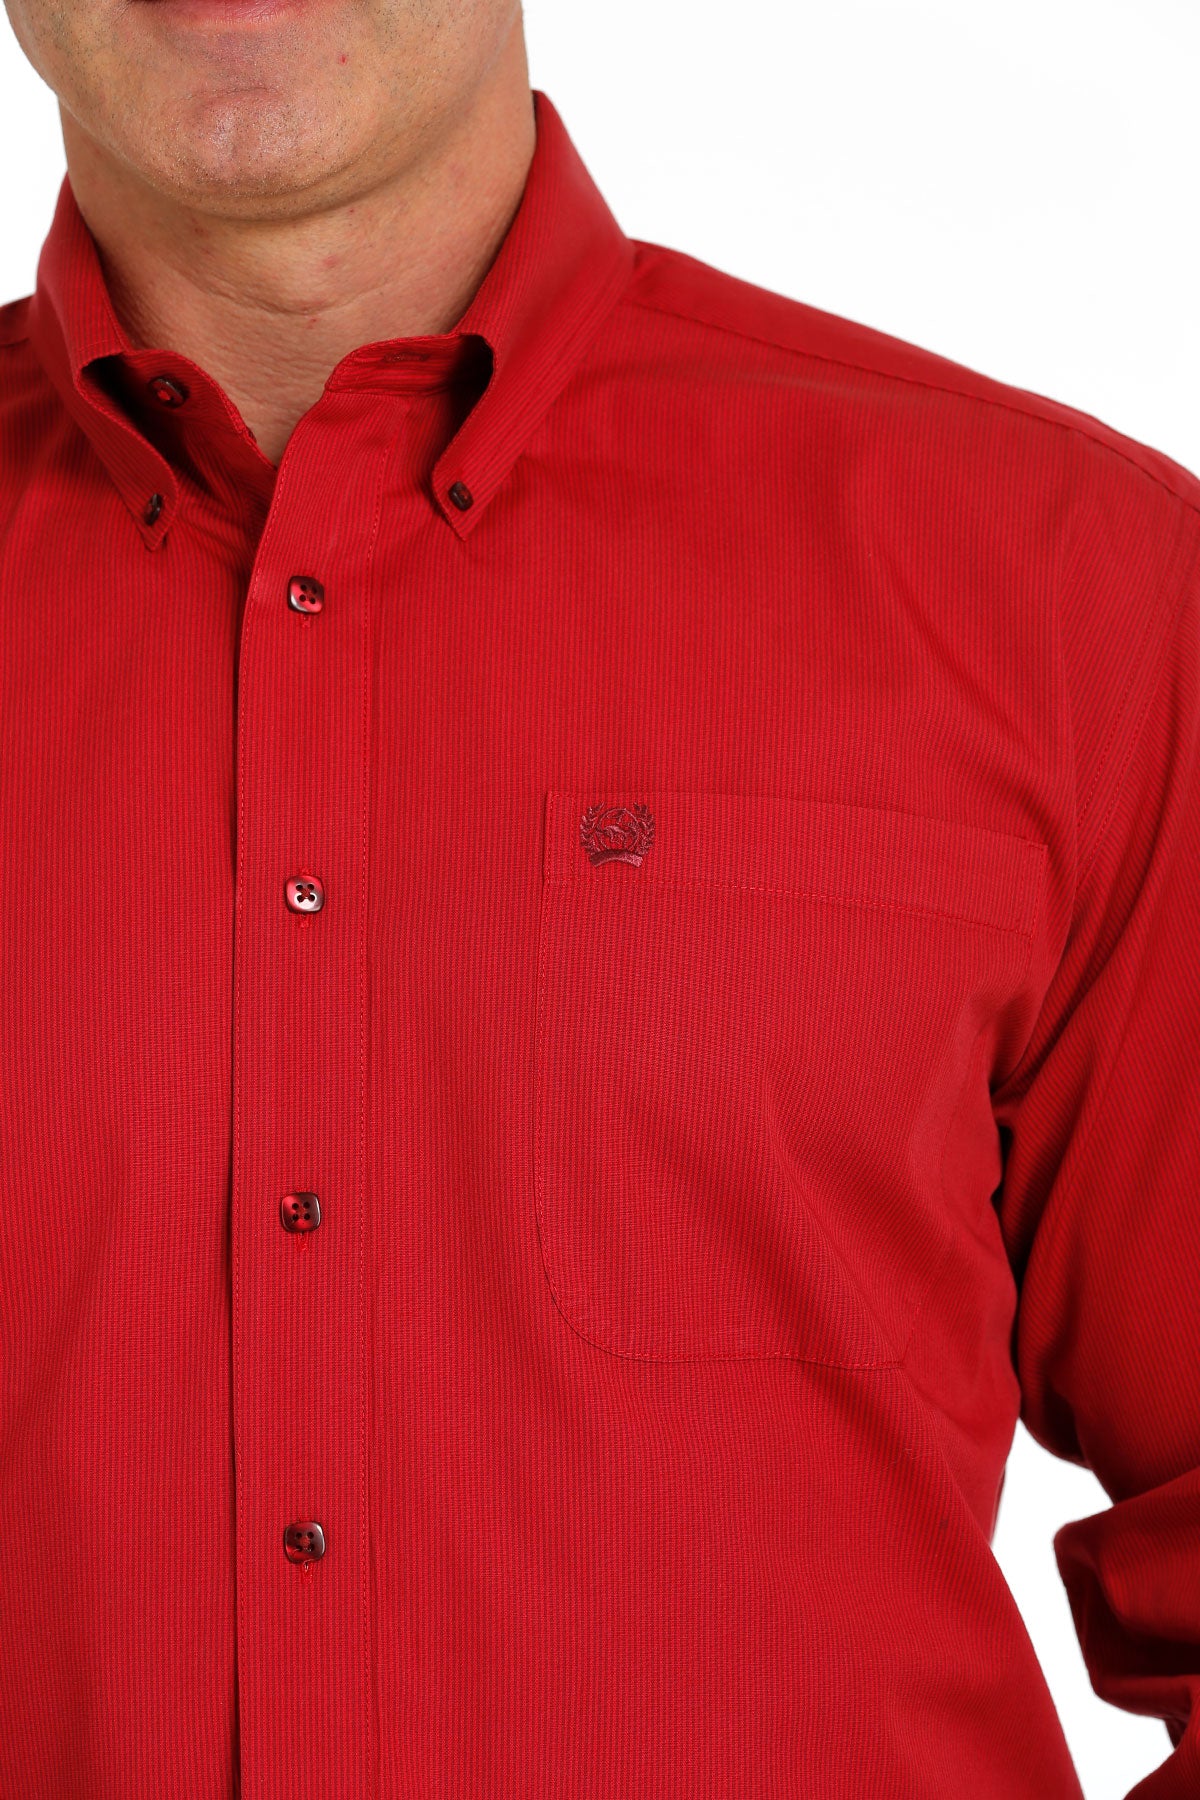 CINCH Men's Red Stripe Button-Down Western Shirt